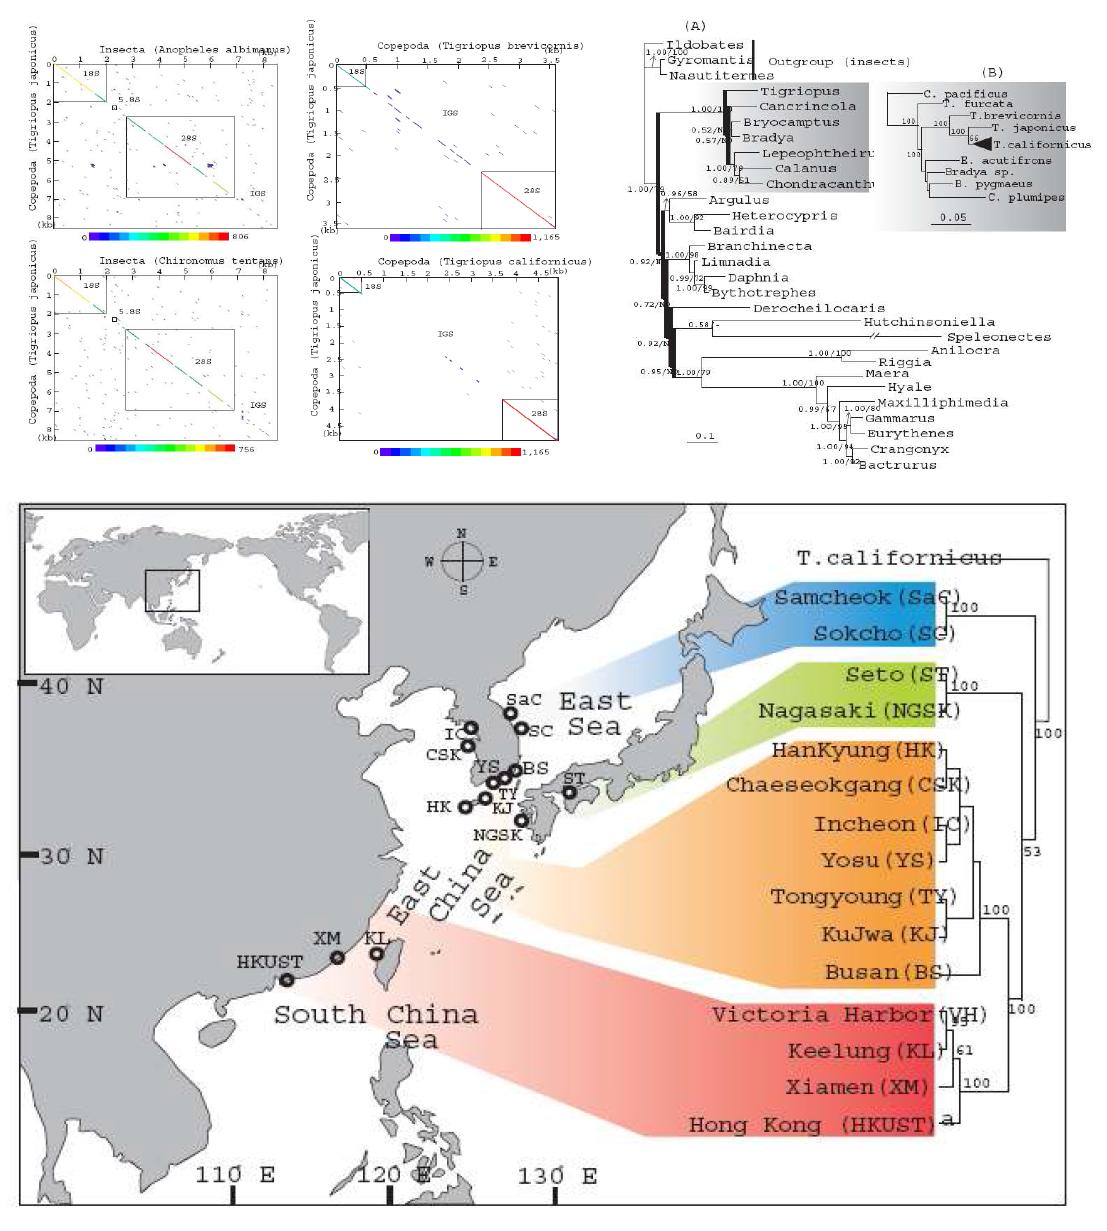 한국, 일본, 중국의 Tigriopus rDNA 및 ITS 분석